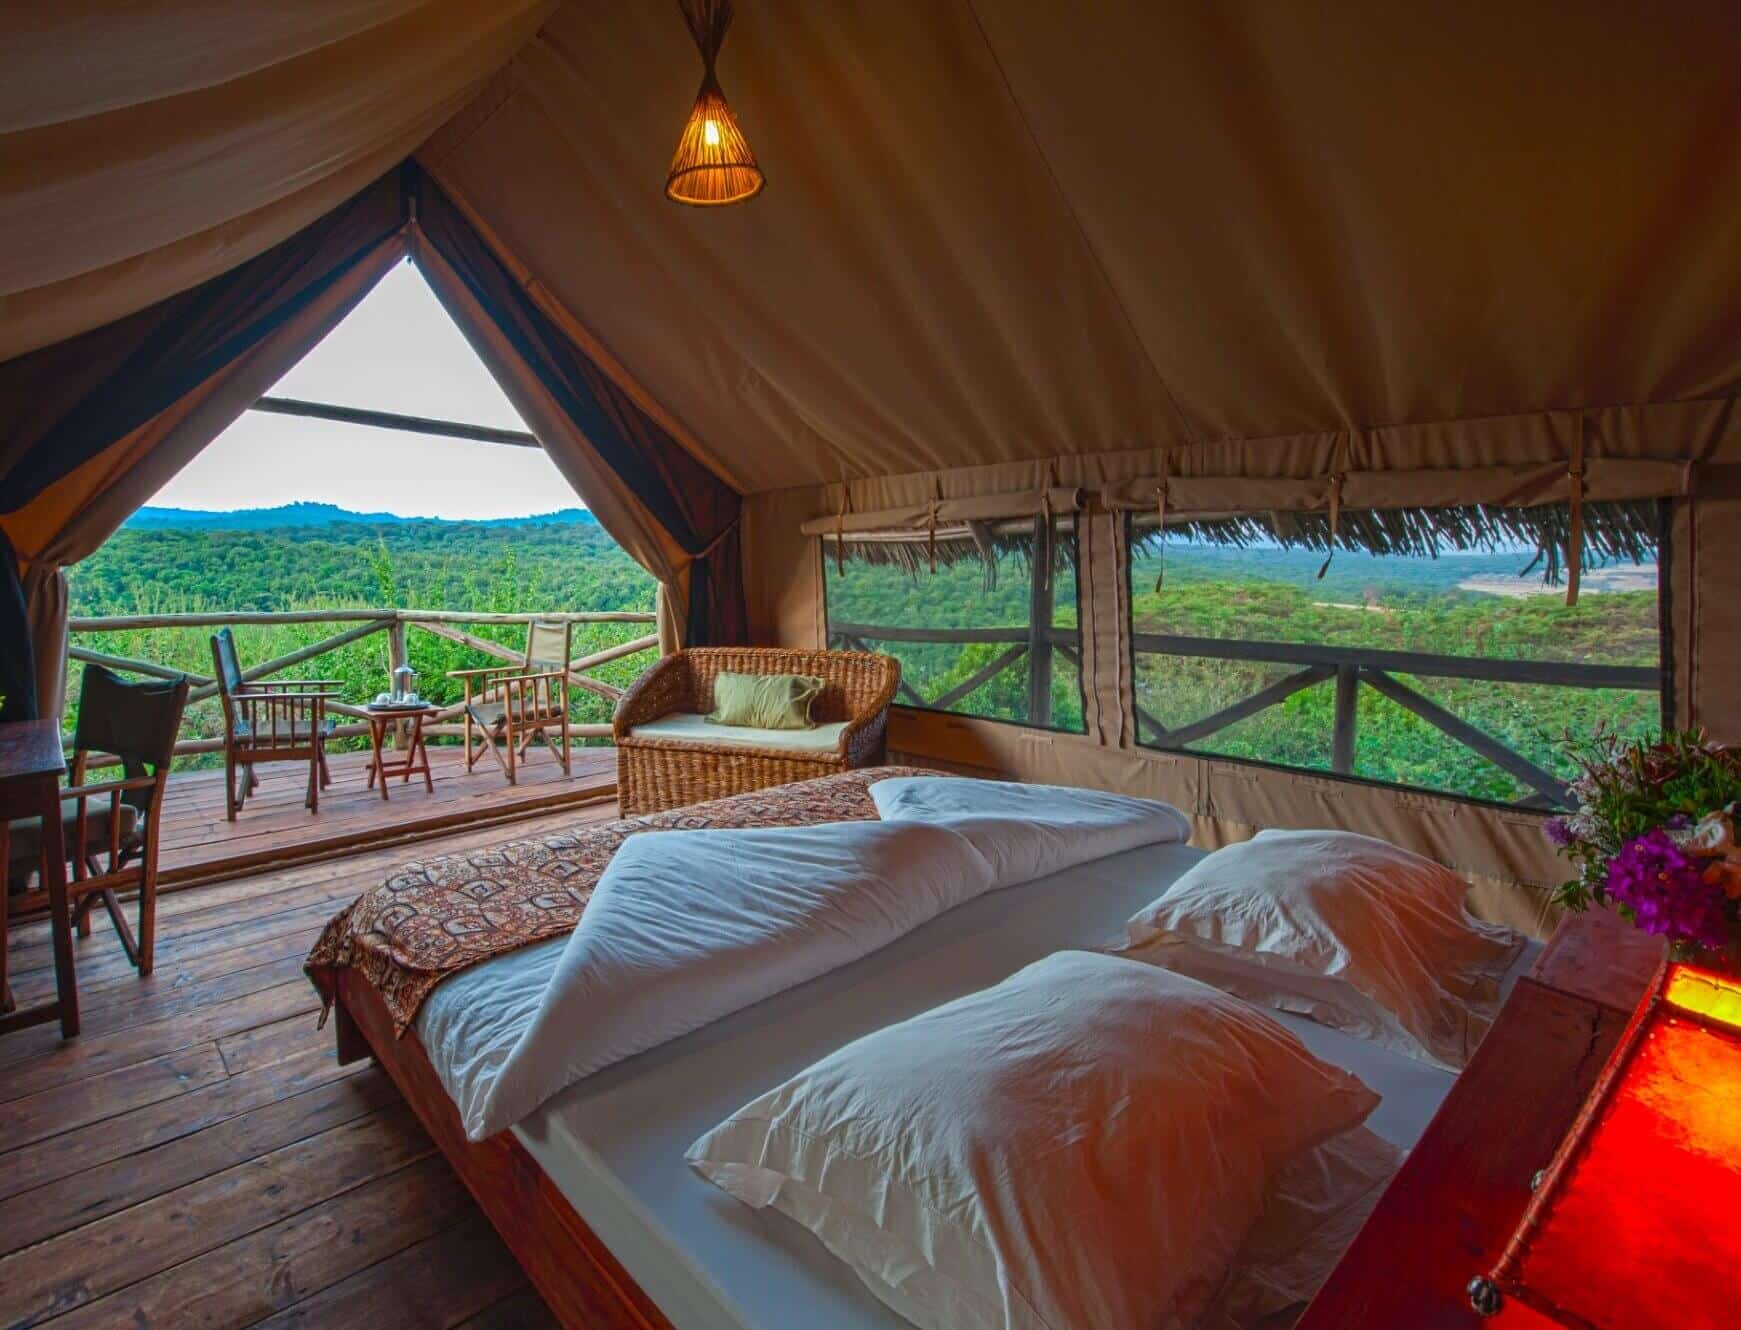 Zimmer in der Rhotia Valley Tented Lodge – Unterkunft in Karatu – Einfache Reise nach Tansania